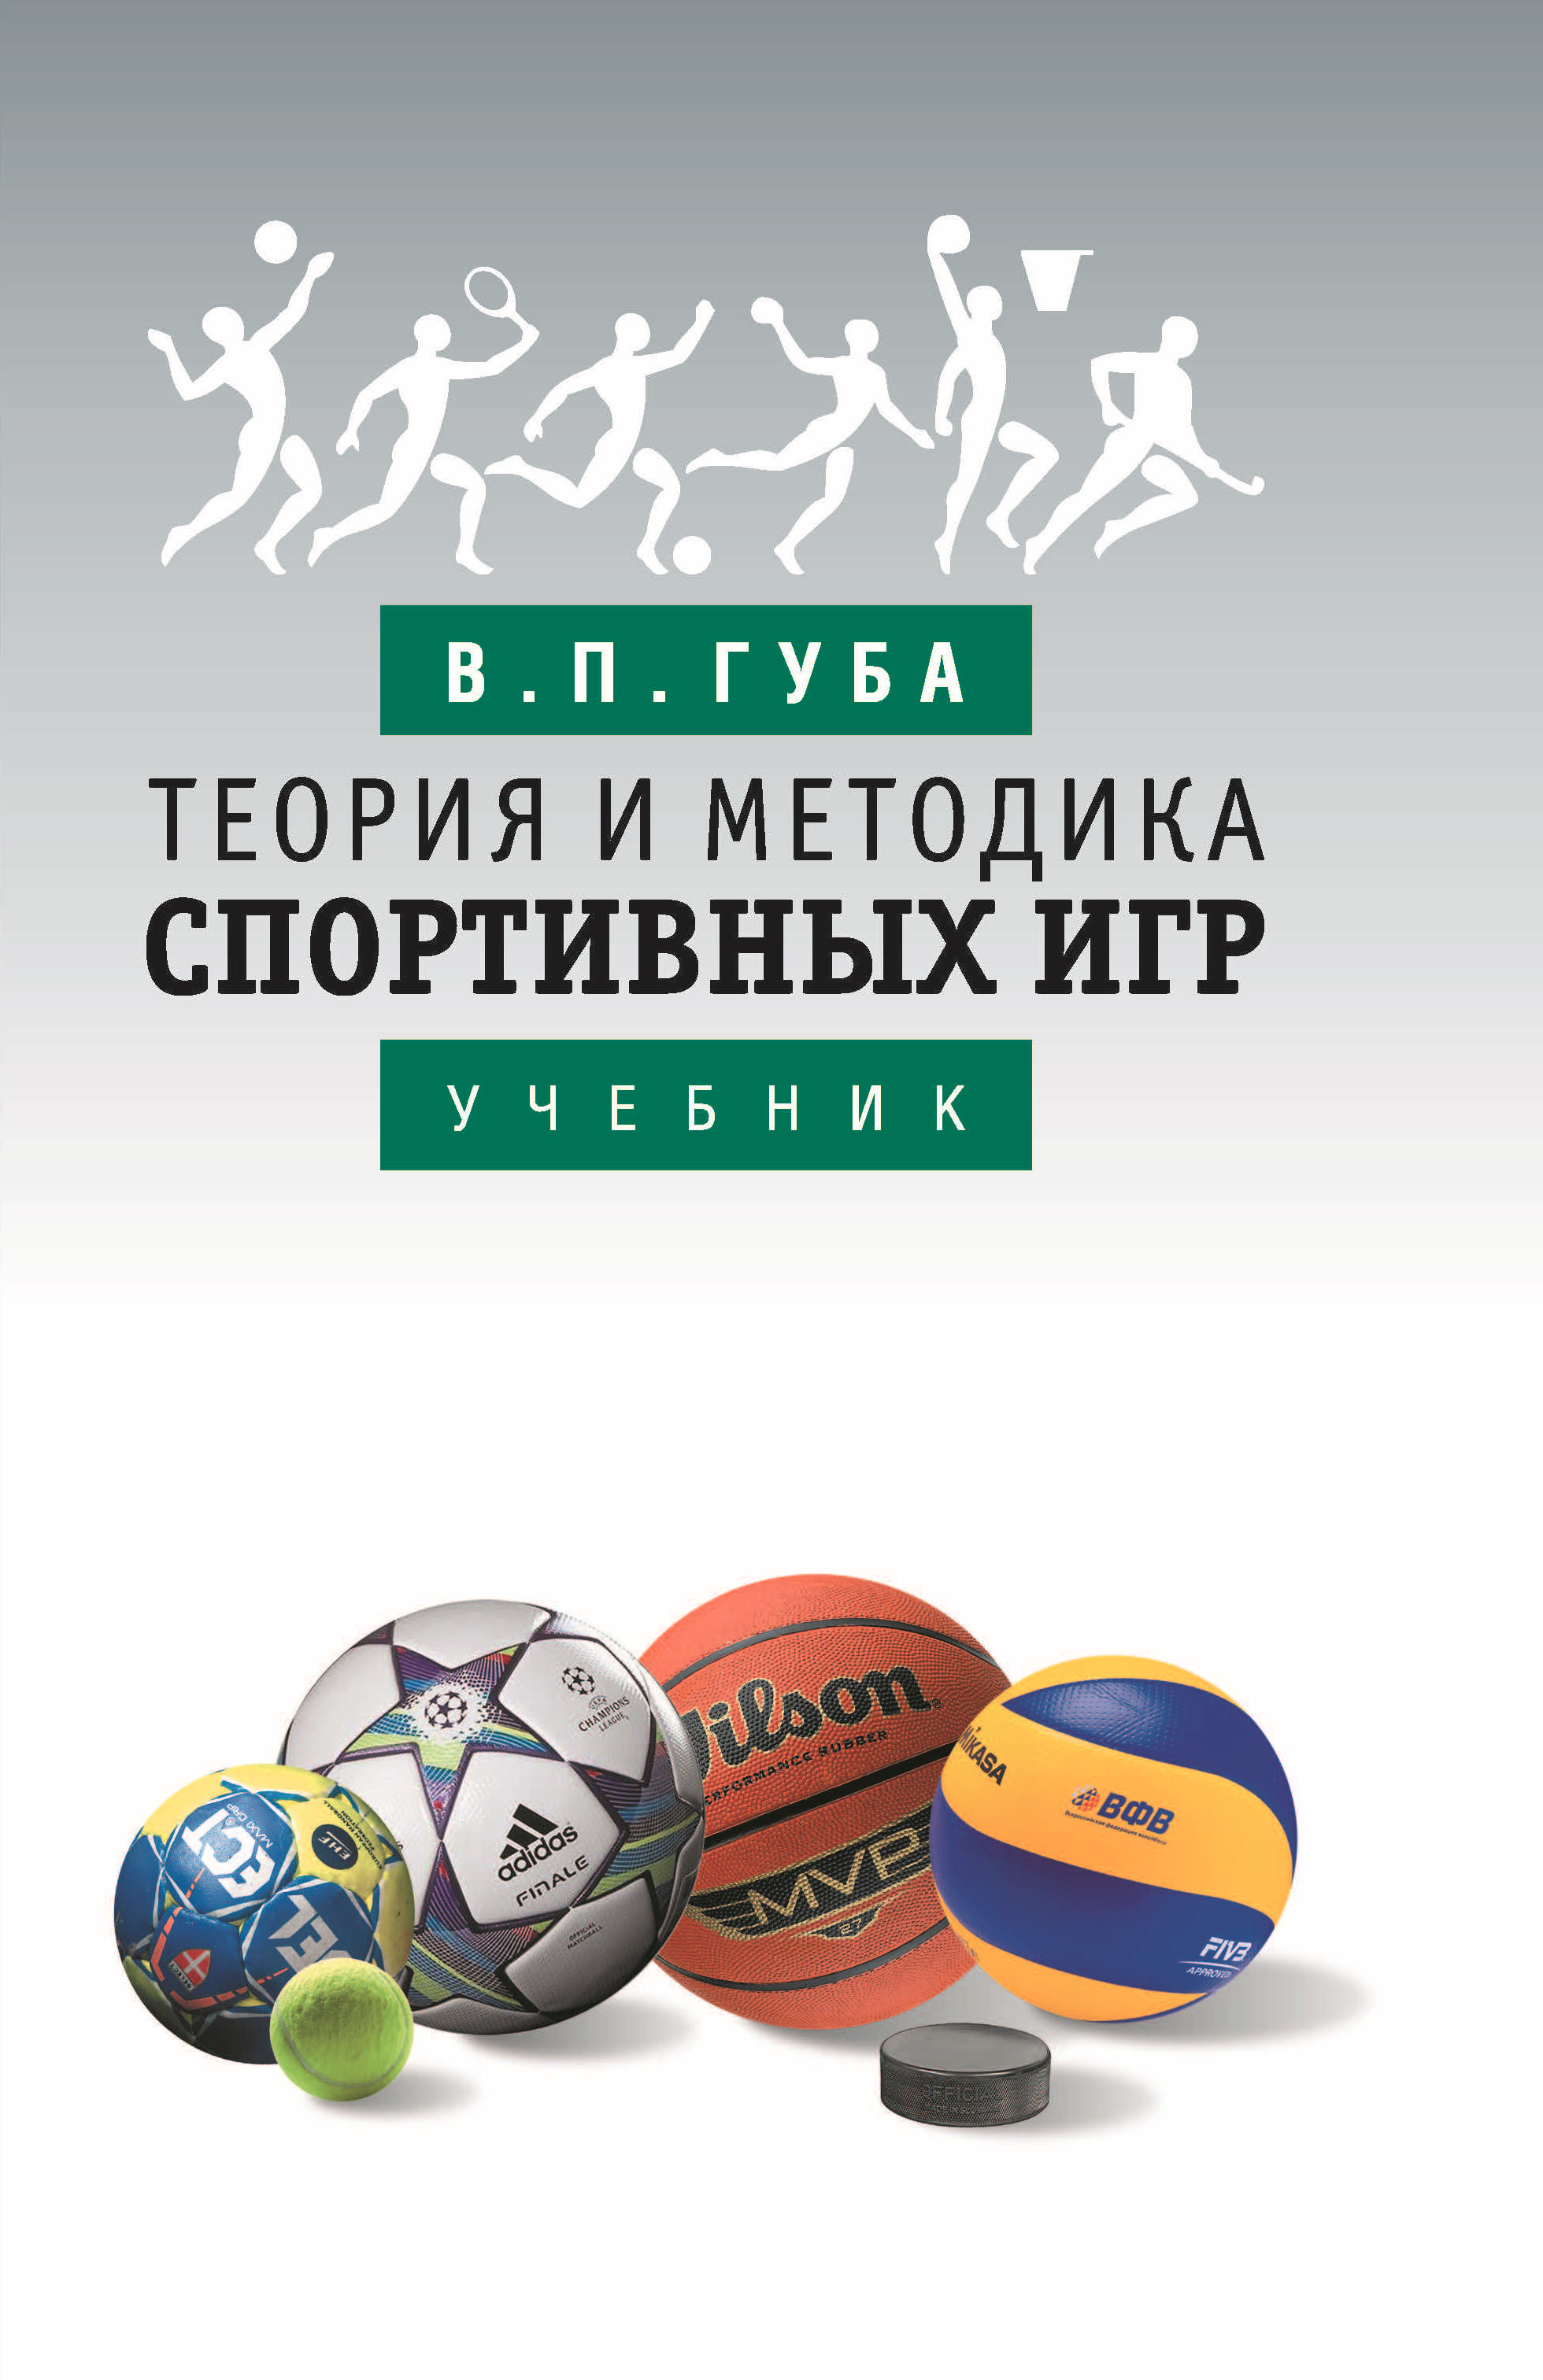 Профессор из Смоленска выпустил новую книгу о теории и методике игровых видов спорта